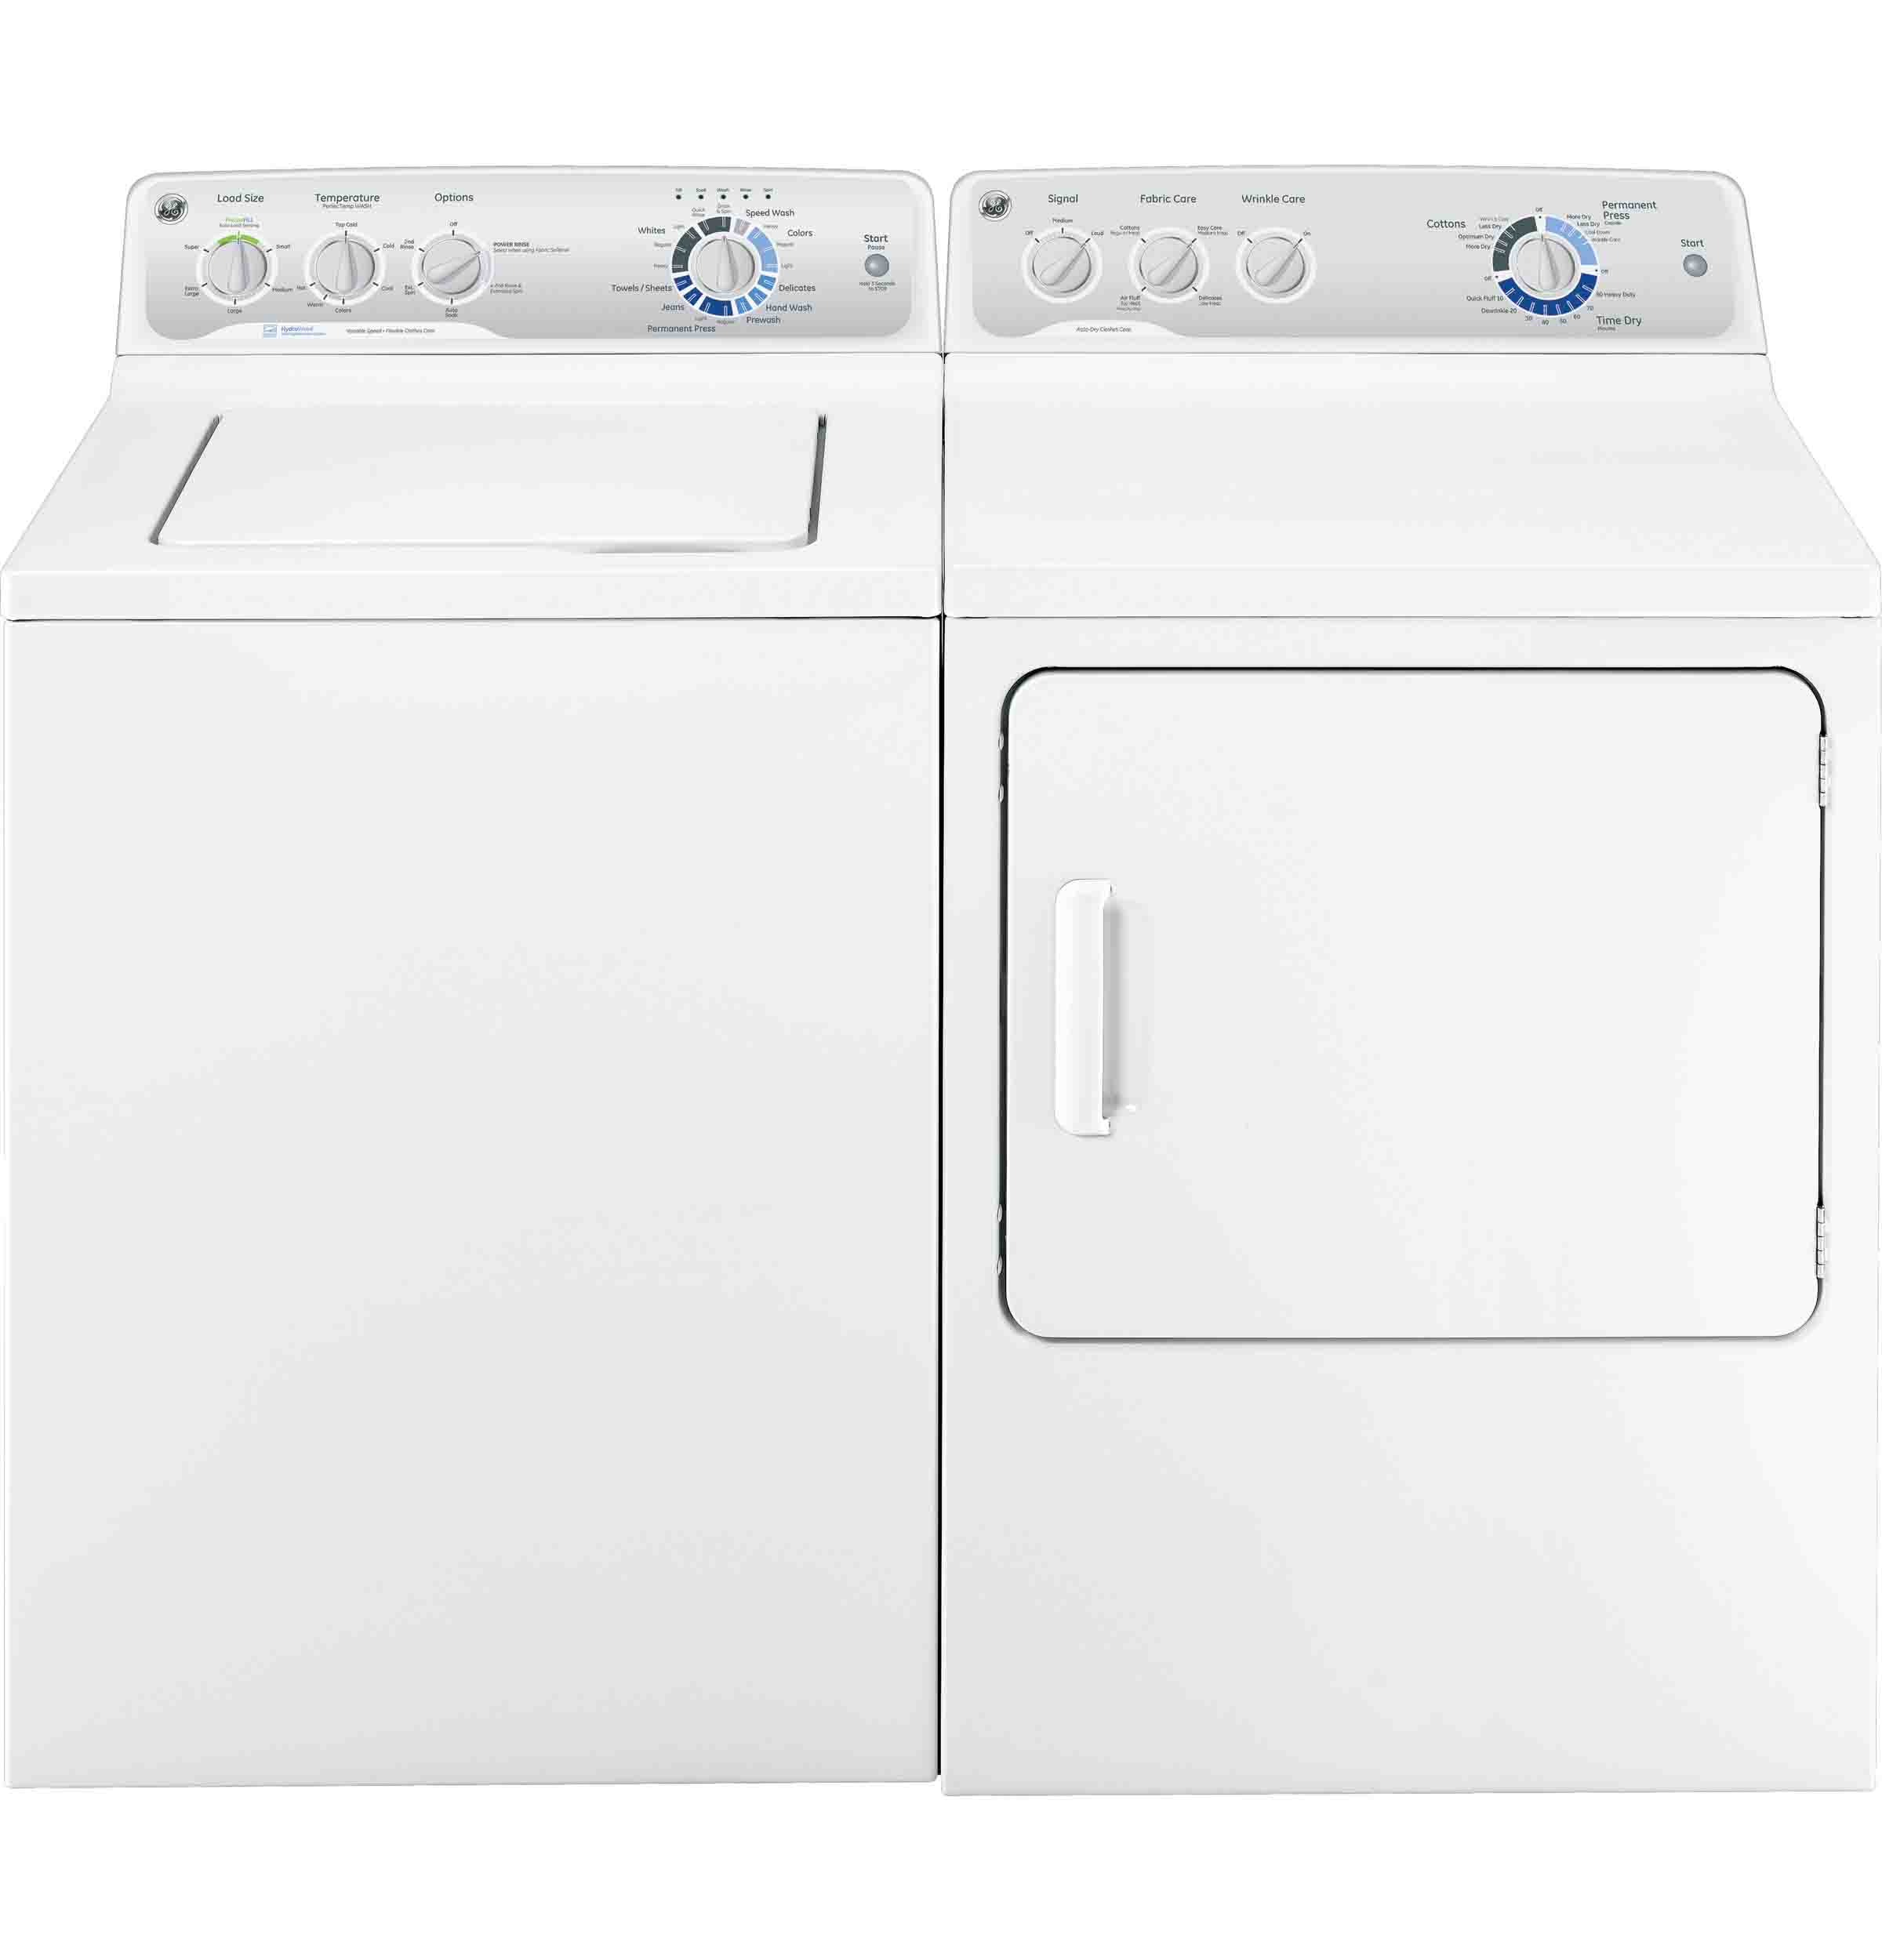 美标洗衣机| 美标Whirlpool洗衣机|惠尔浦缩水率测试机